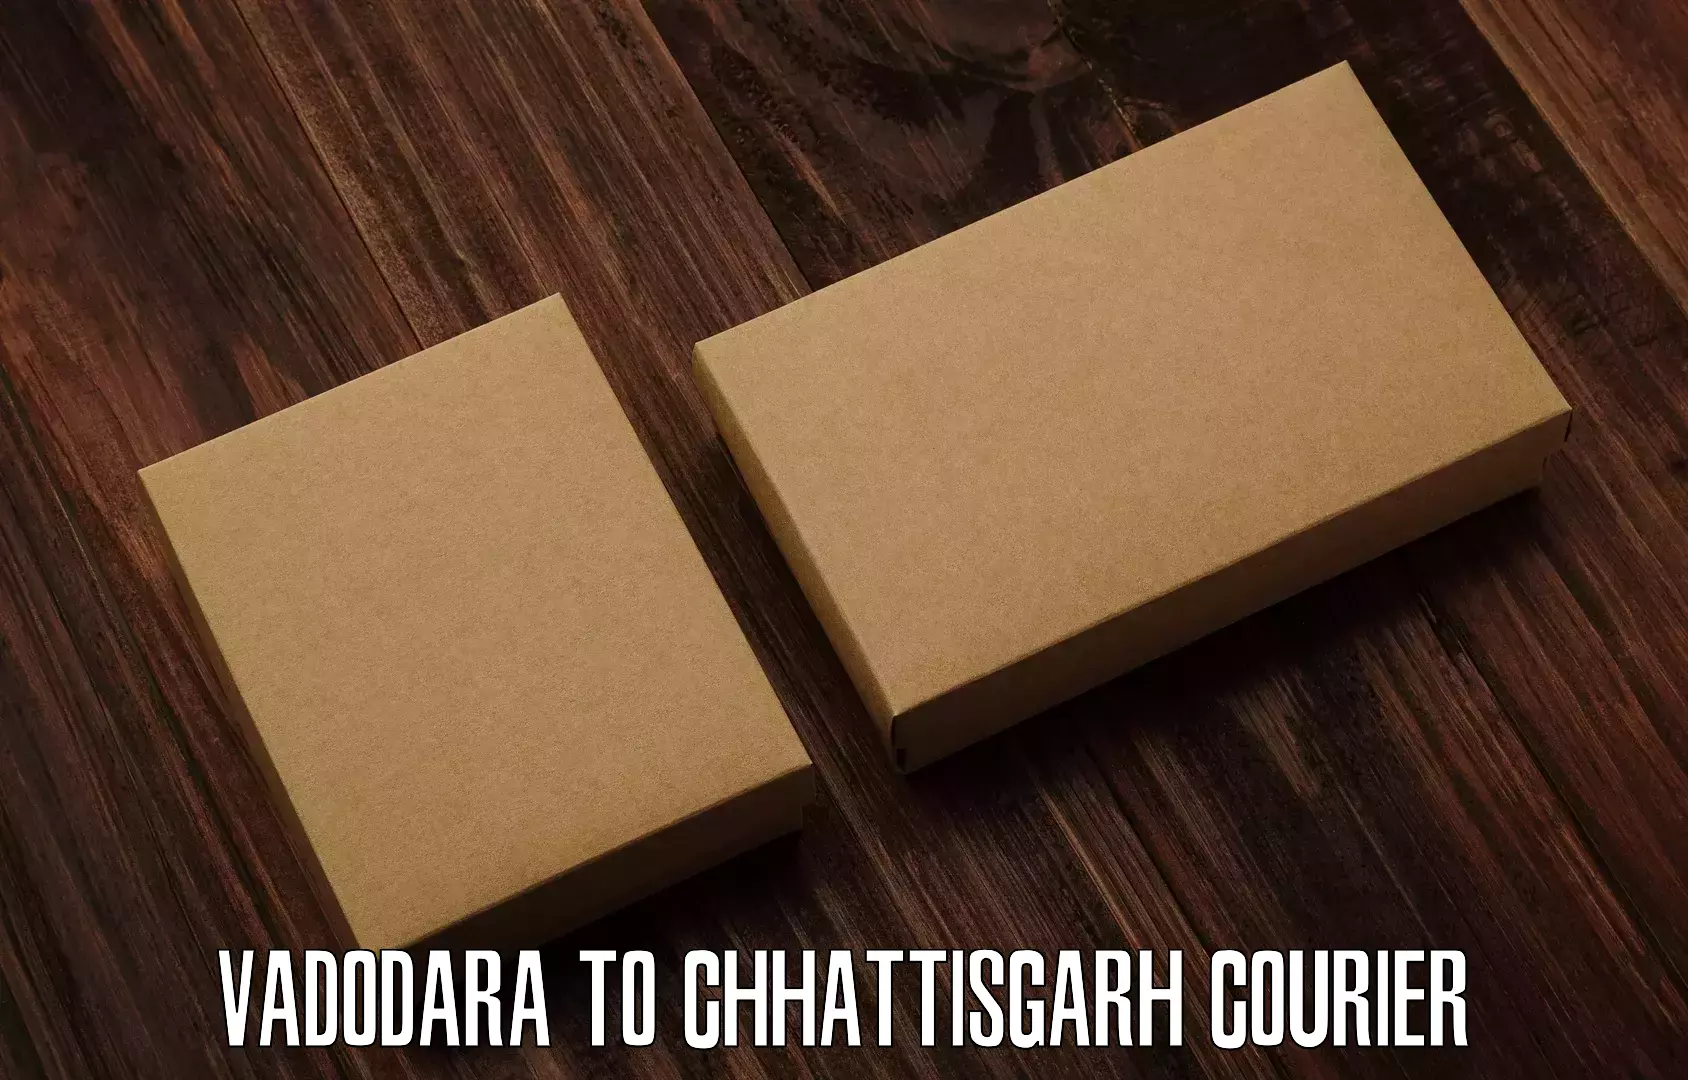 Postal and courier services Vadodara to Korea Chhattisgarh